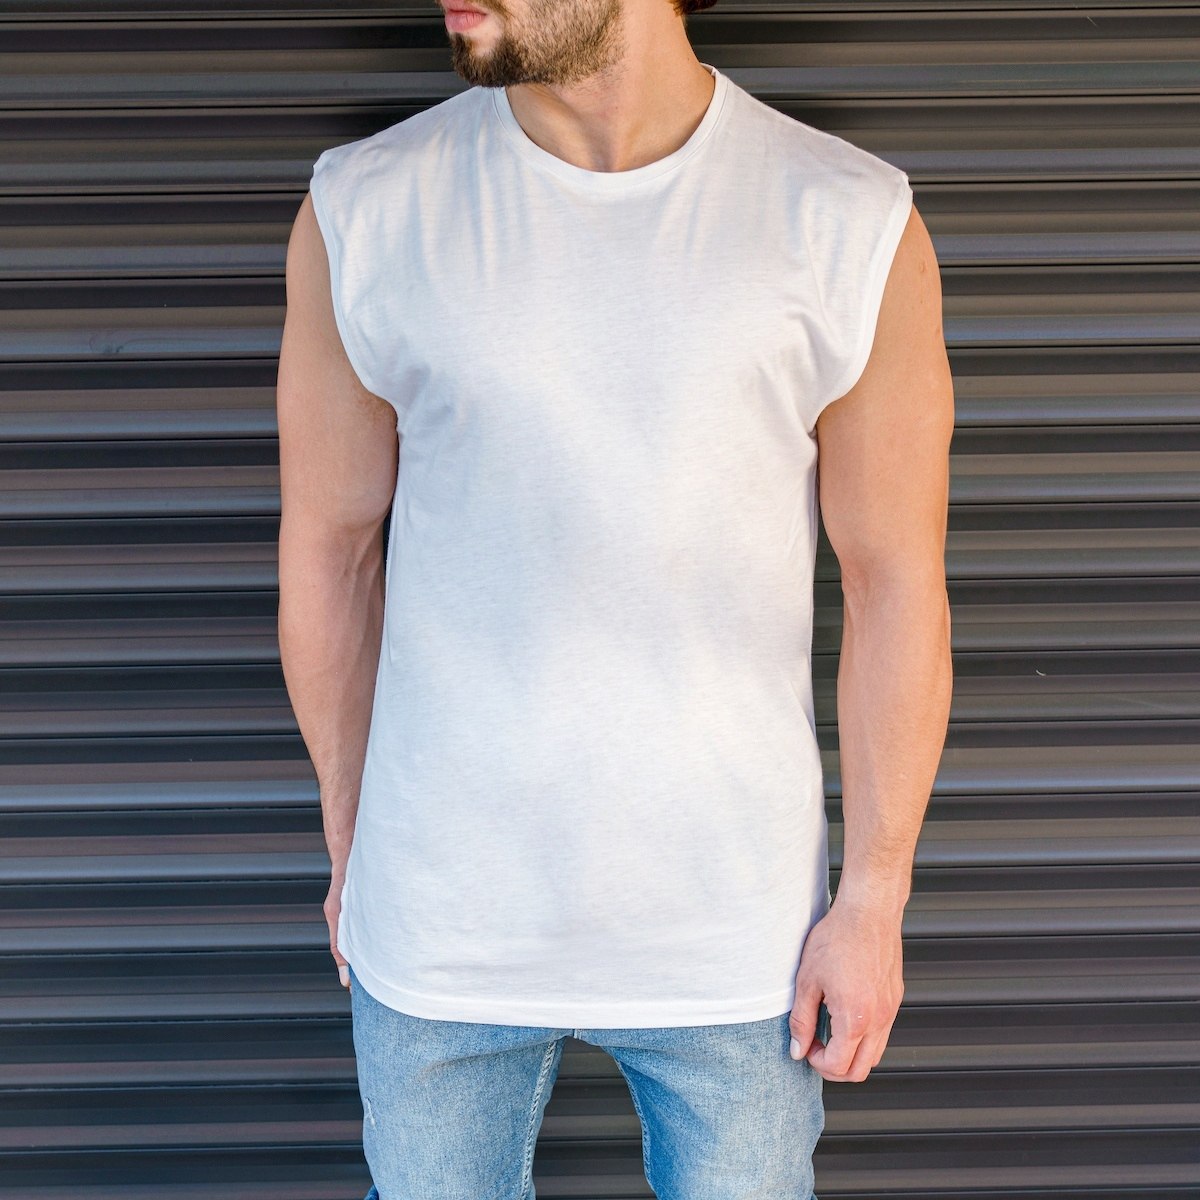 Men's Basic Sleeveless T-Shirt In White